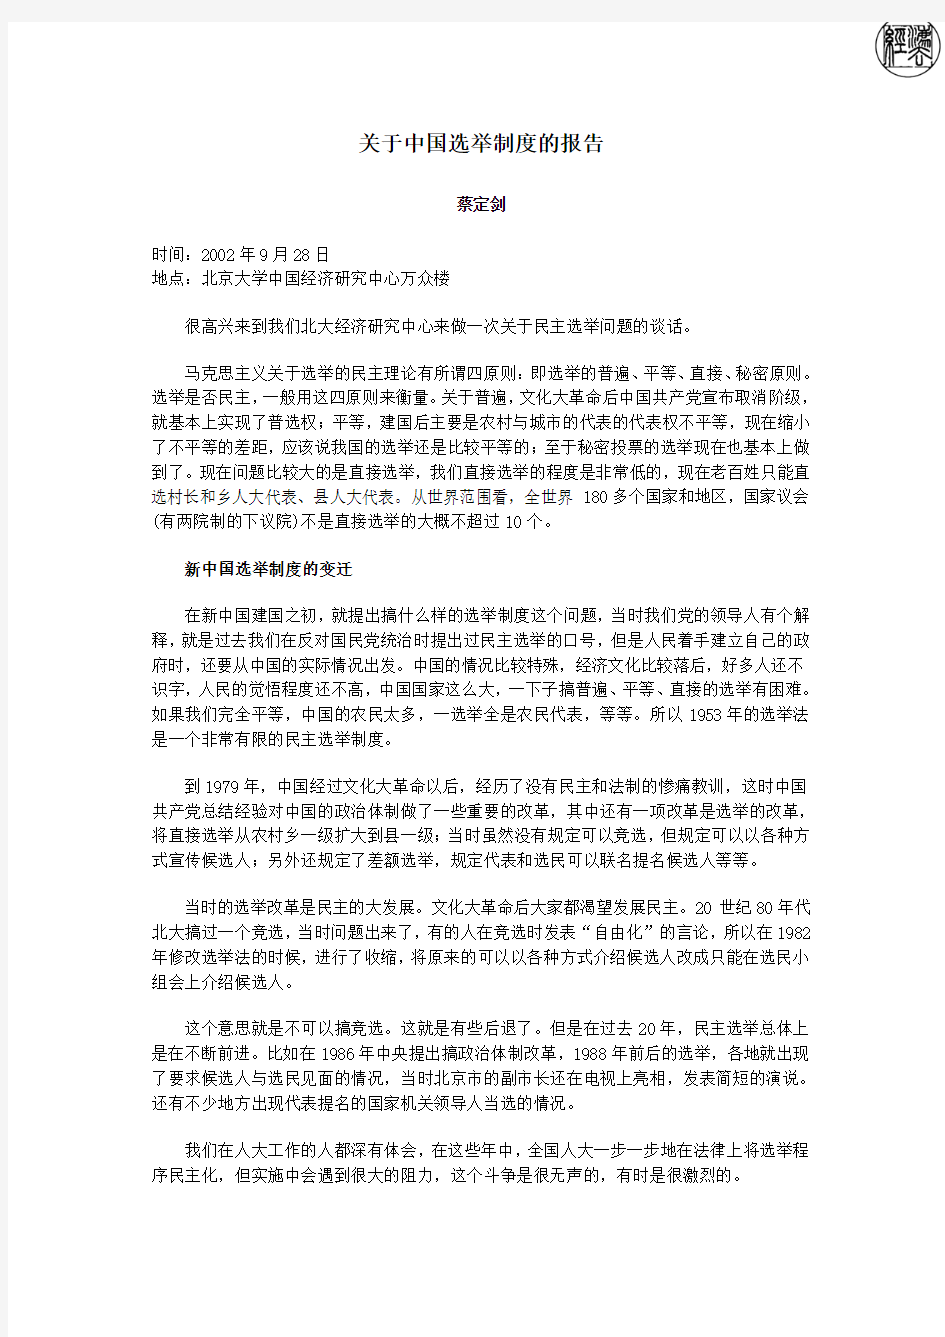 蔡定剑：关于中国选举制度的报告